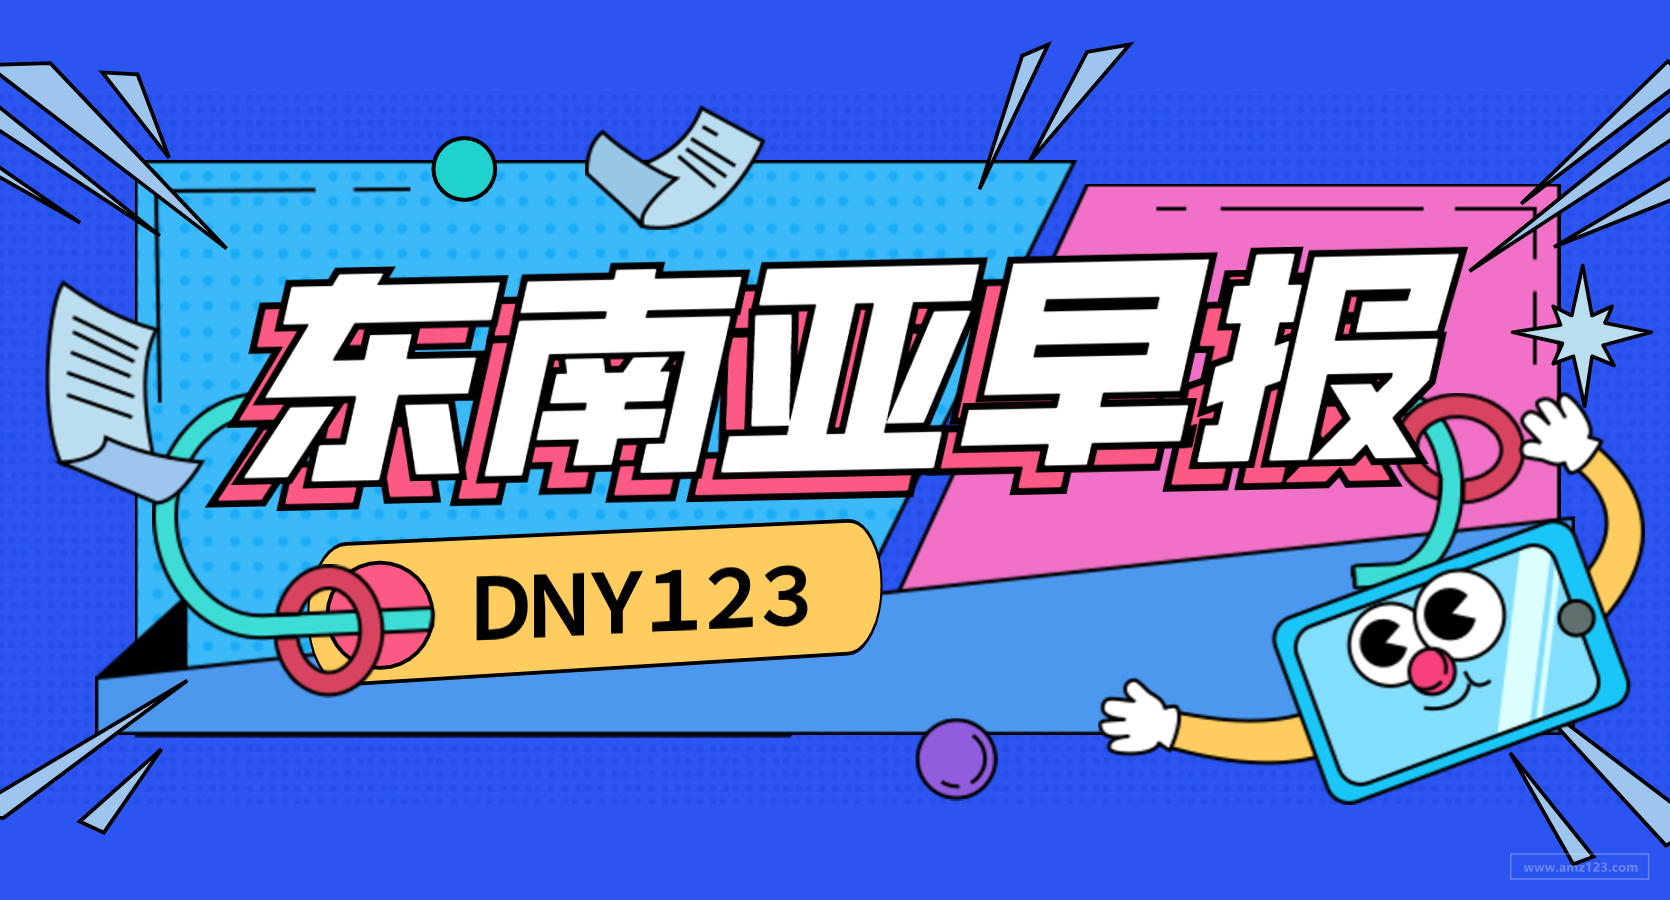  【DNY123跨境早报】越南平台双11平均销售额创下2000万美元记录，新加坡、马来西亚Q3电商排名出炉